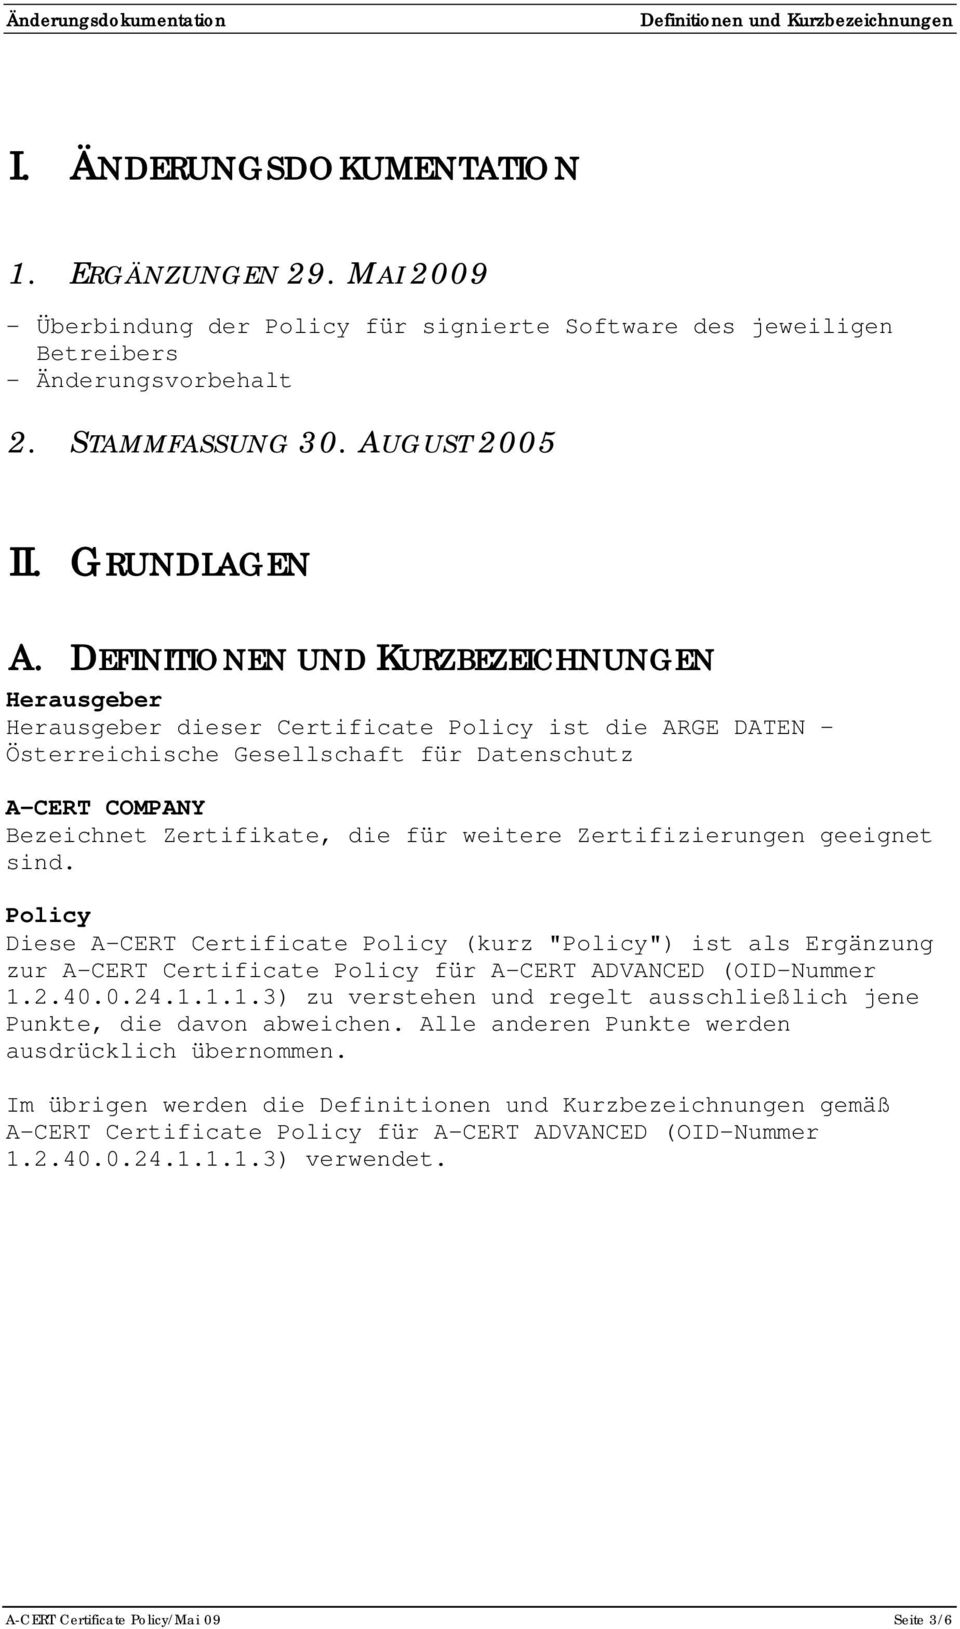 DEFINITIONEN UND KURZBEZEICHNUNGEN Herausgeber Herausgeber dieser Certificate Policy ist die ARGE DATEN - Österreichische Gesellschaft für Datenschutz A-CERT COMPANY Bezeichnet Zertifikate, die für